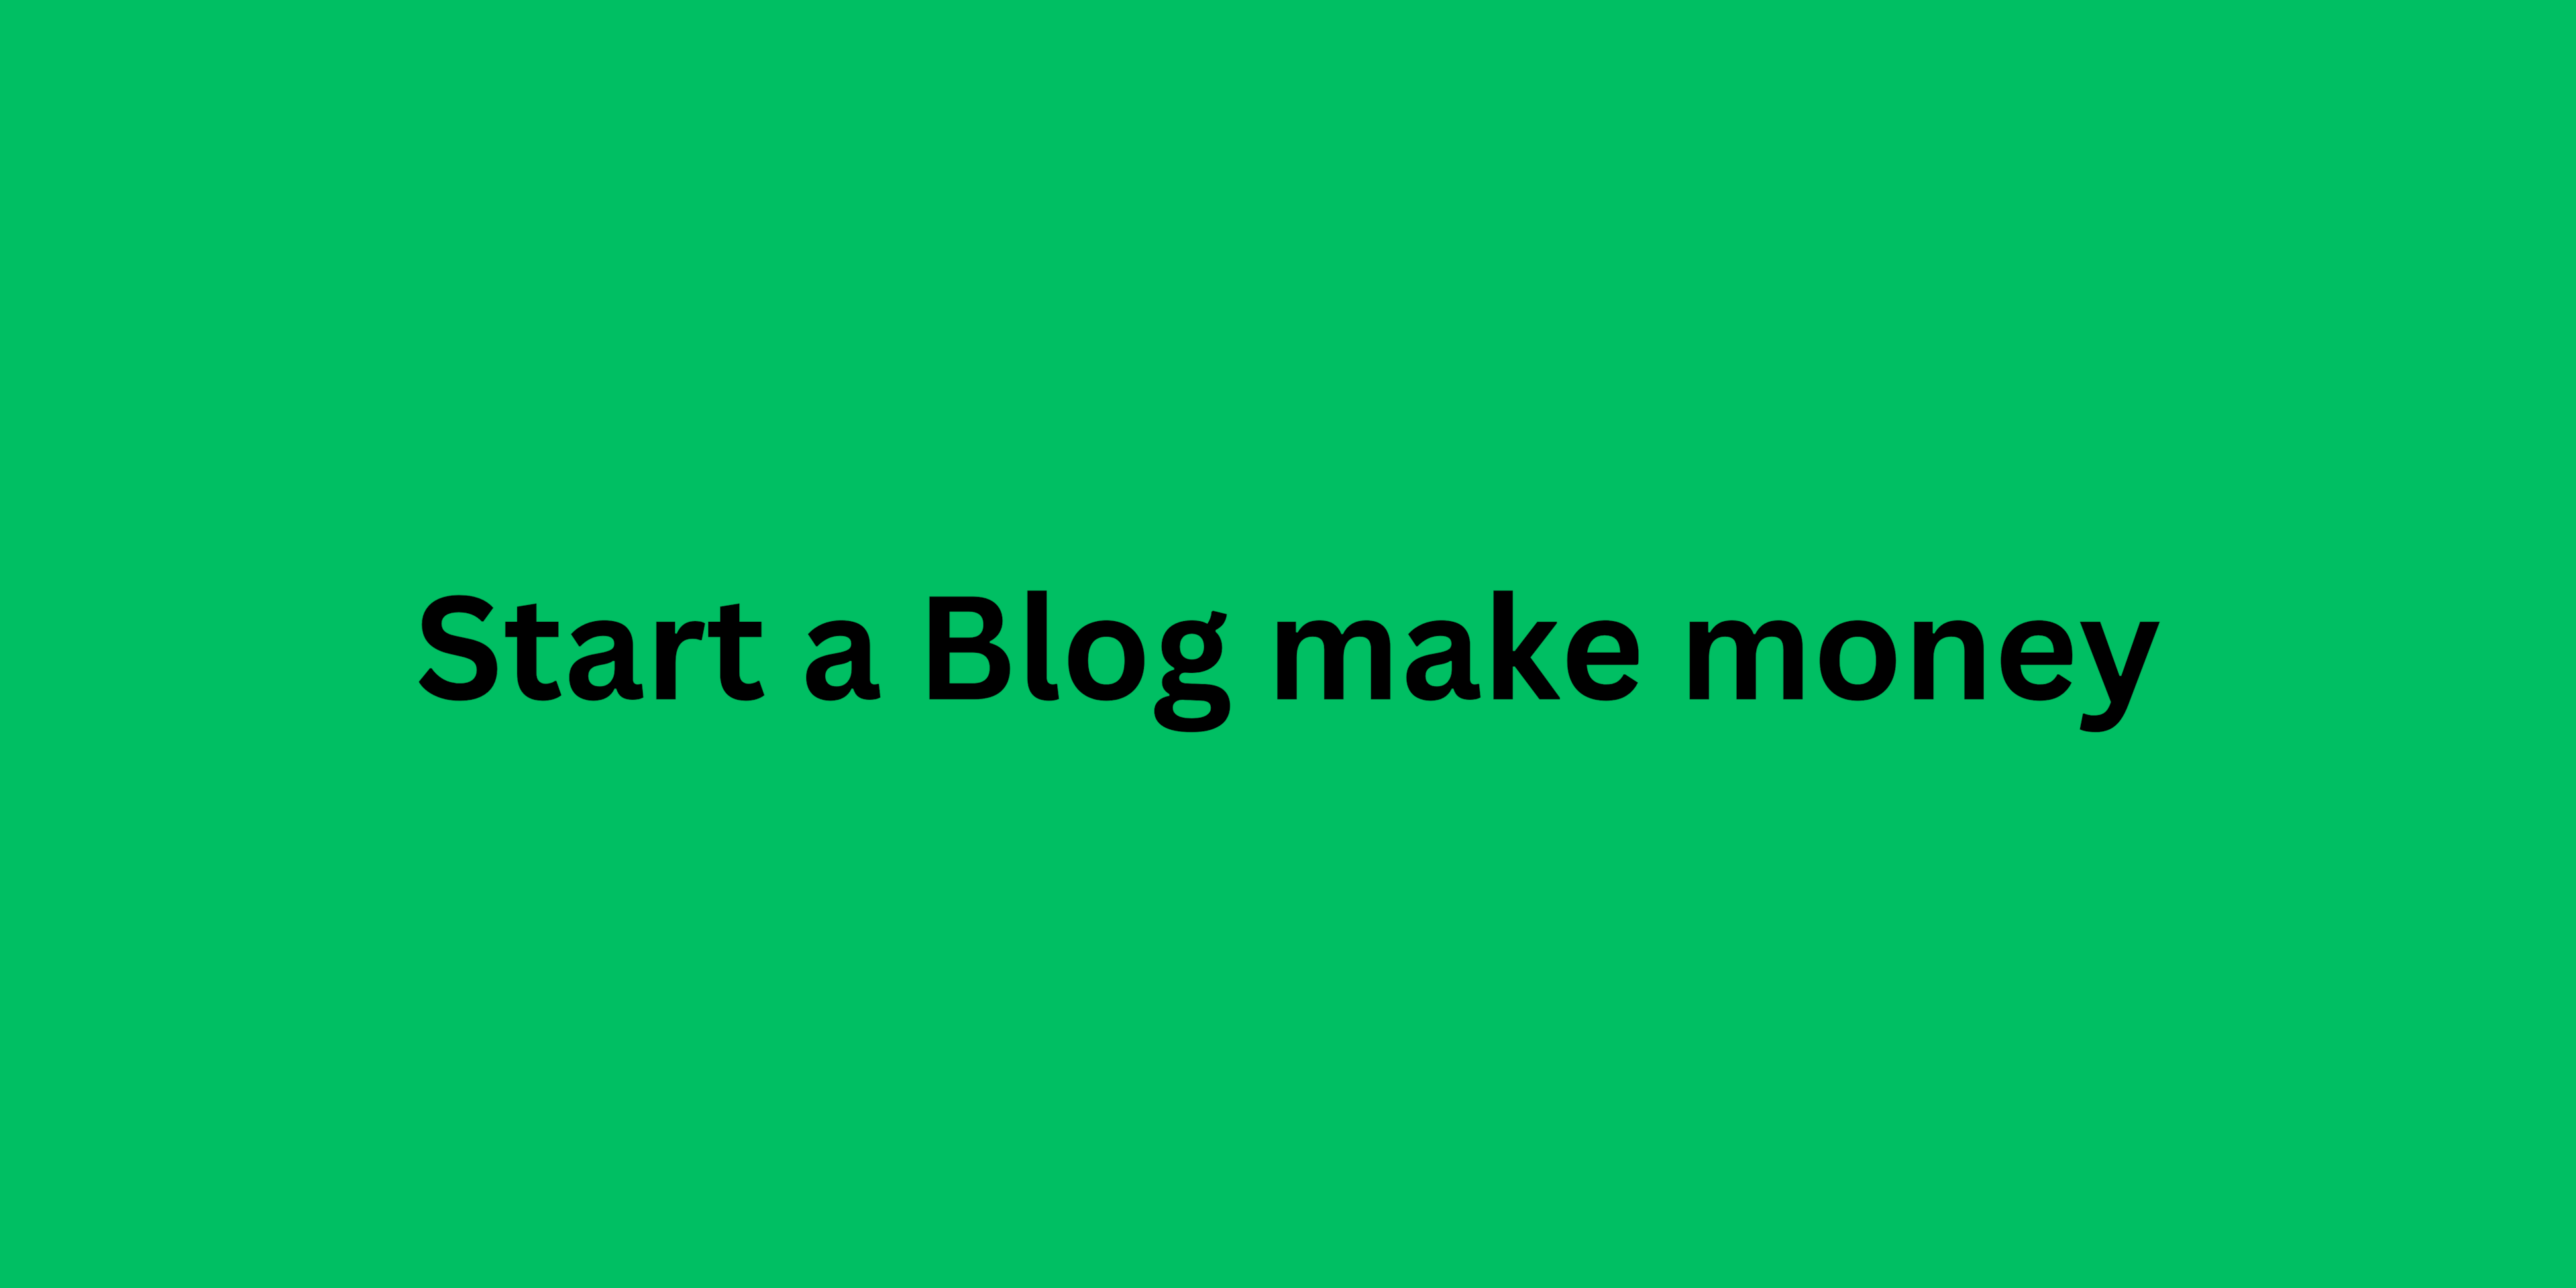 Start a Blog make money